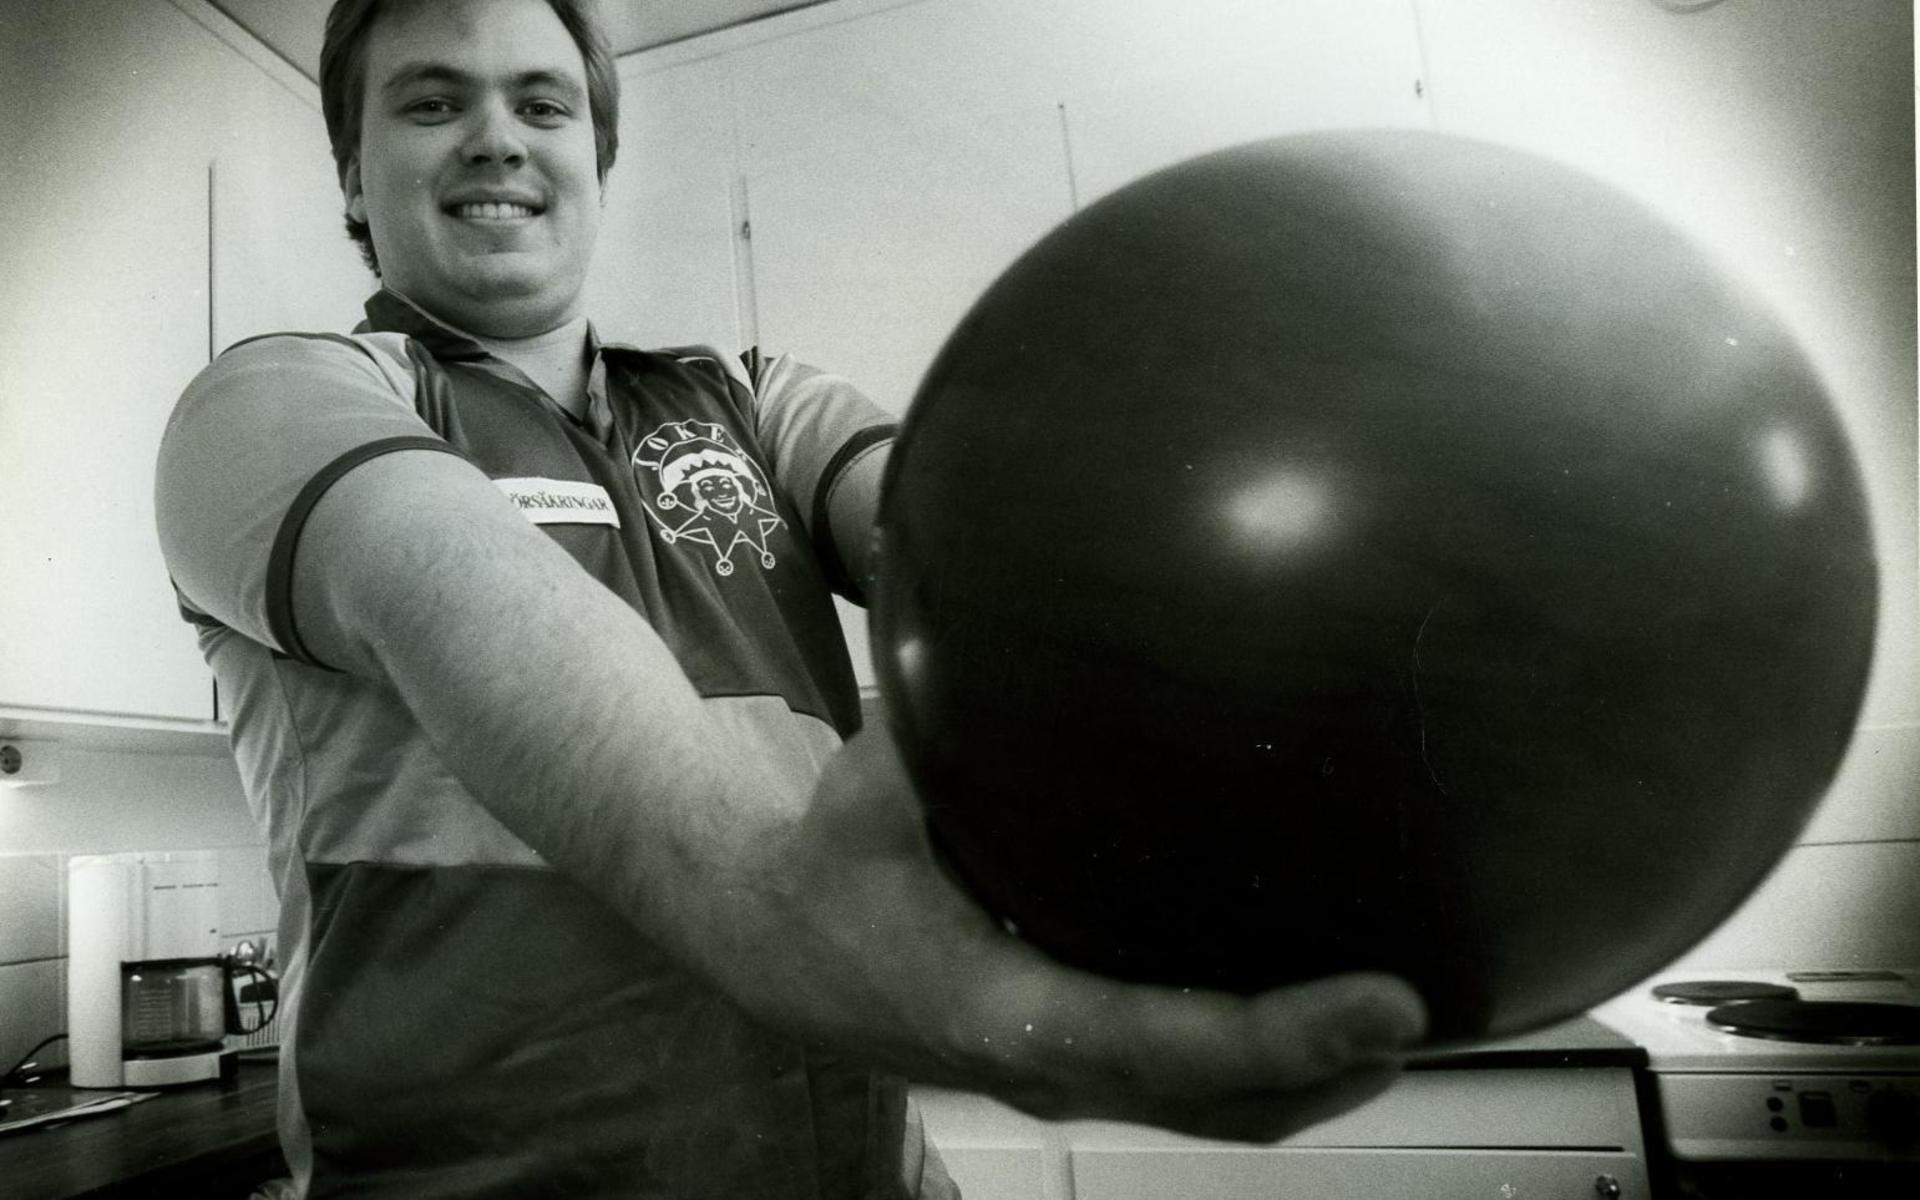 Fredrik Johnstone, före detta Hansson, briljerade på bowlingbanorna under många år. 